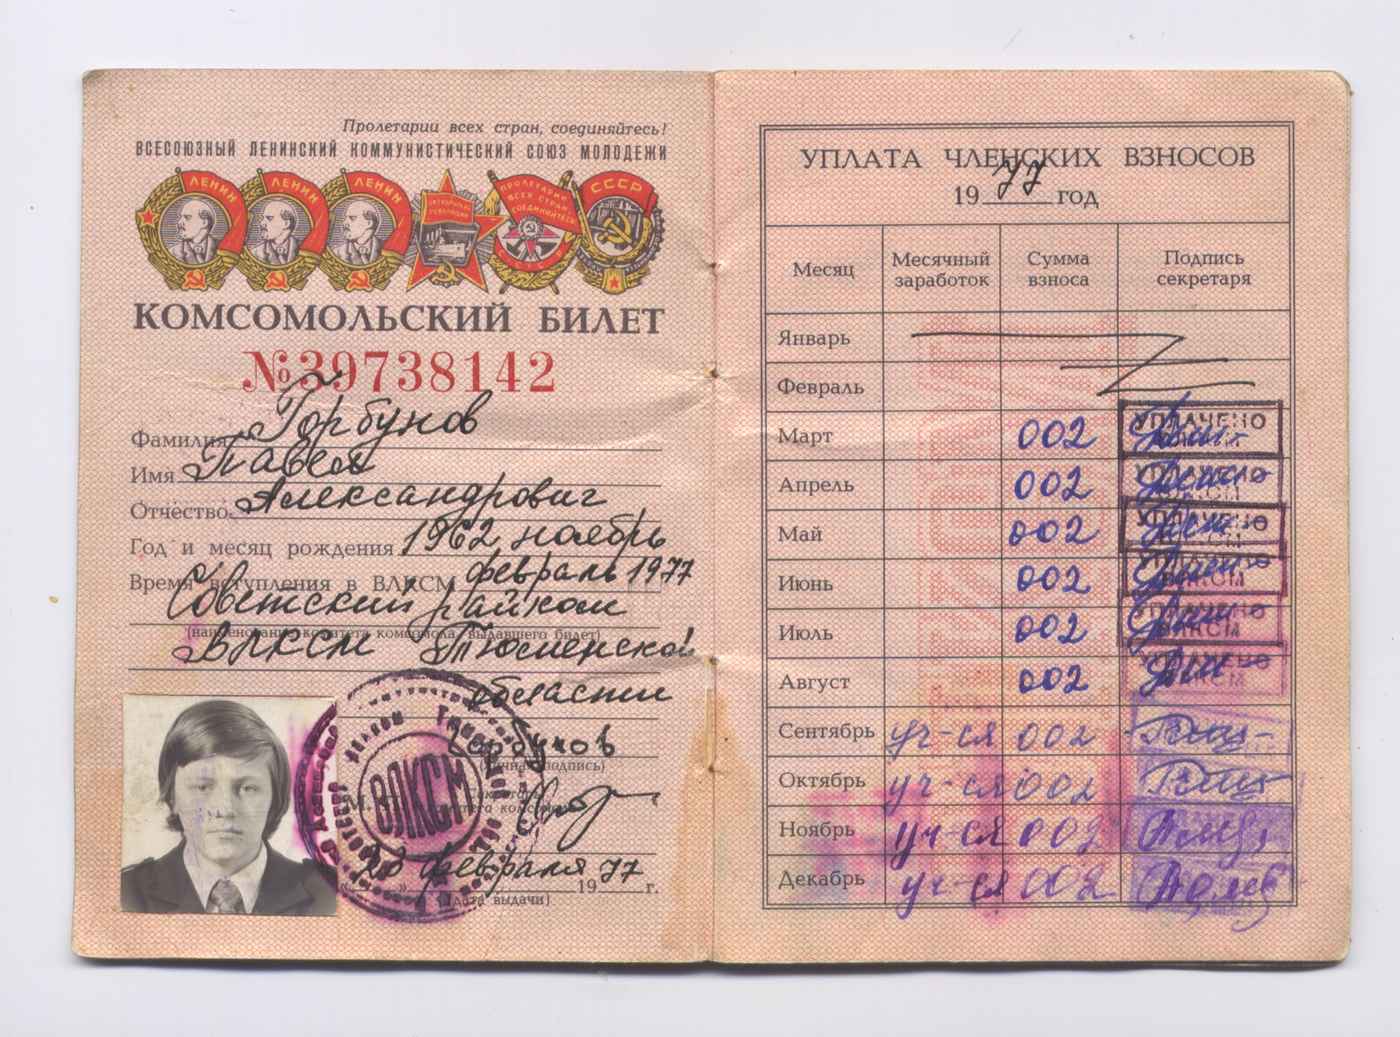 Комсомольский билет № 39738142 на имя Горбунова П.А. образца 1975 г.